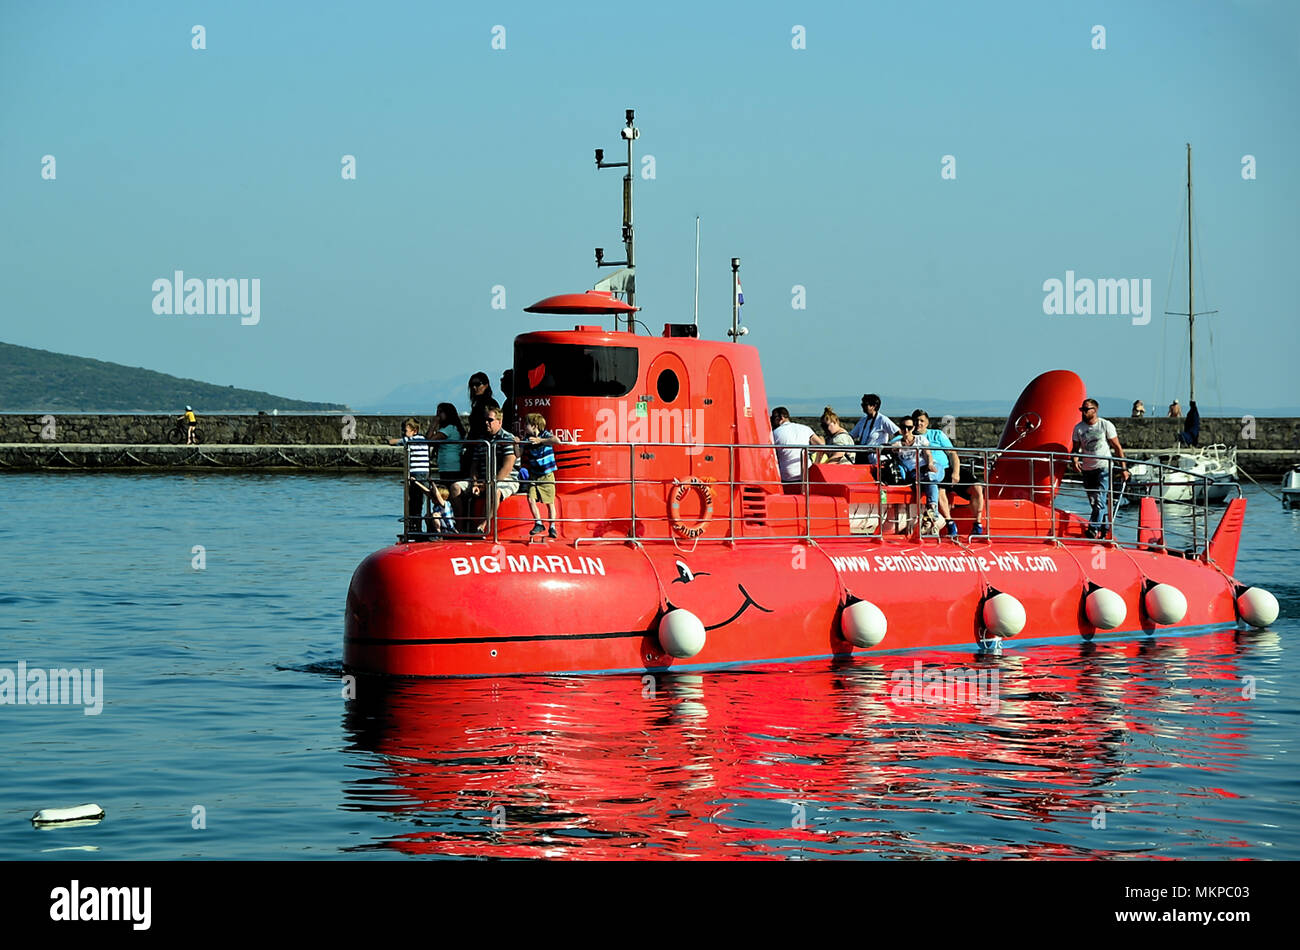 La Croatie, Krk. Le semisubmarines rouge sont des bateaux à fond de verre,  combinaison unique de panorama de la vieille ville de Krk, à partir du pont  de l'semisubmarine ainsi que l'excursion